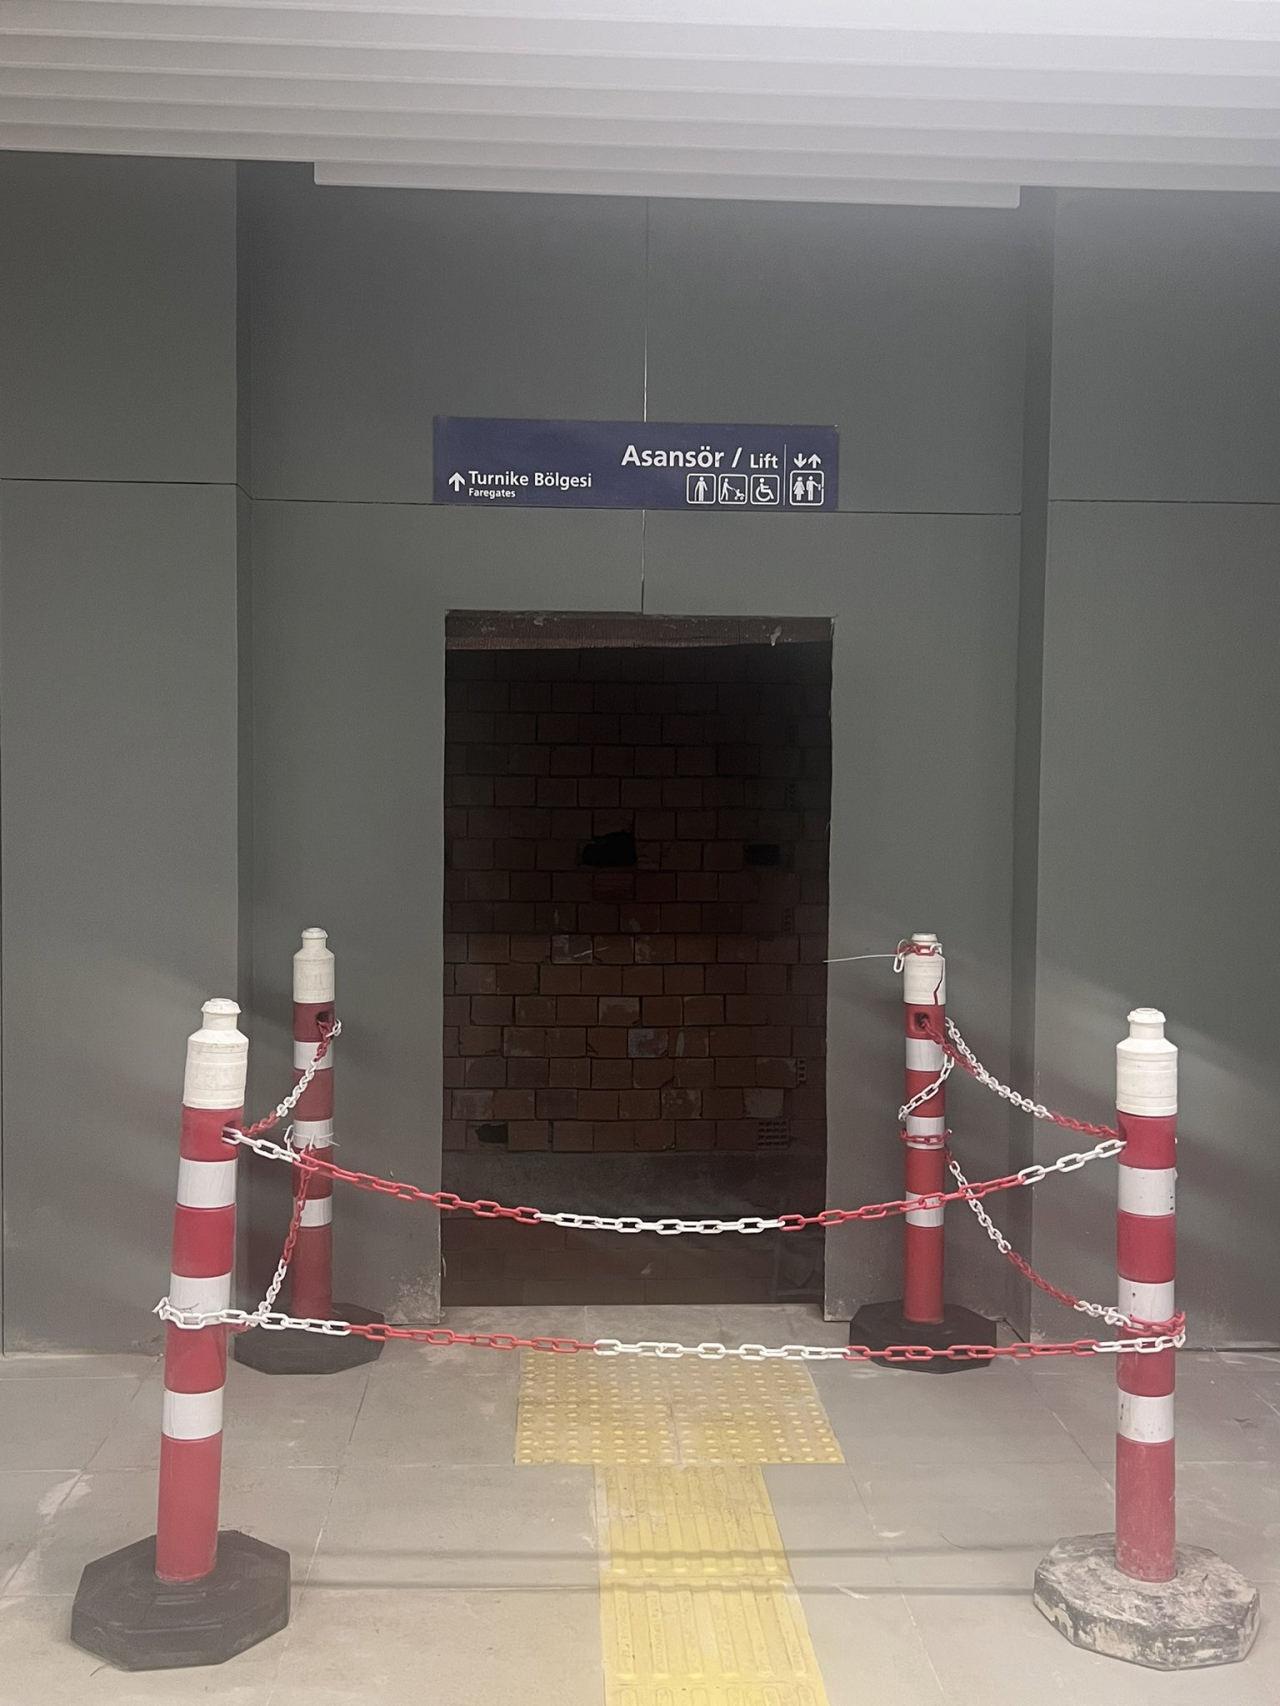 Dudullu-Bostancı metrosunun henüz tam olarak bitirilemeden açılışının yapıldığı ortaya çıktı. 